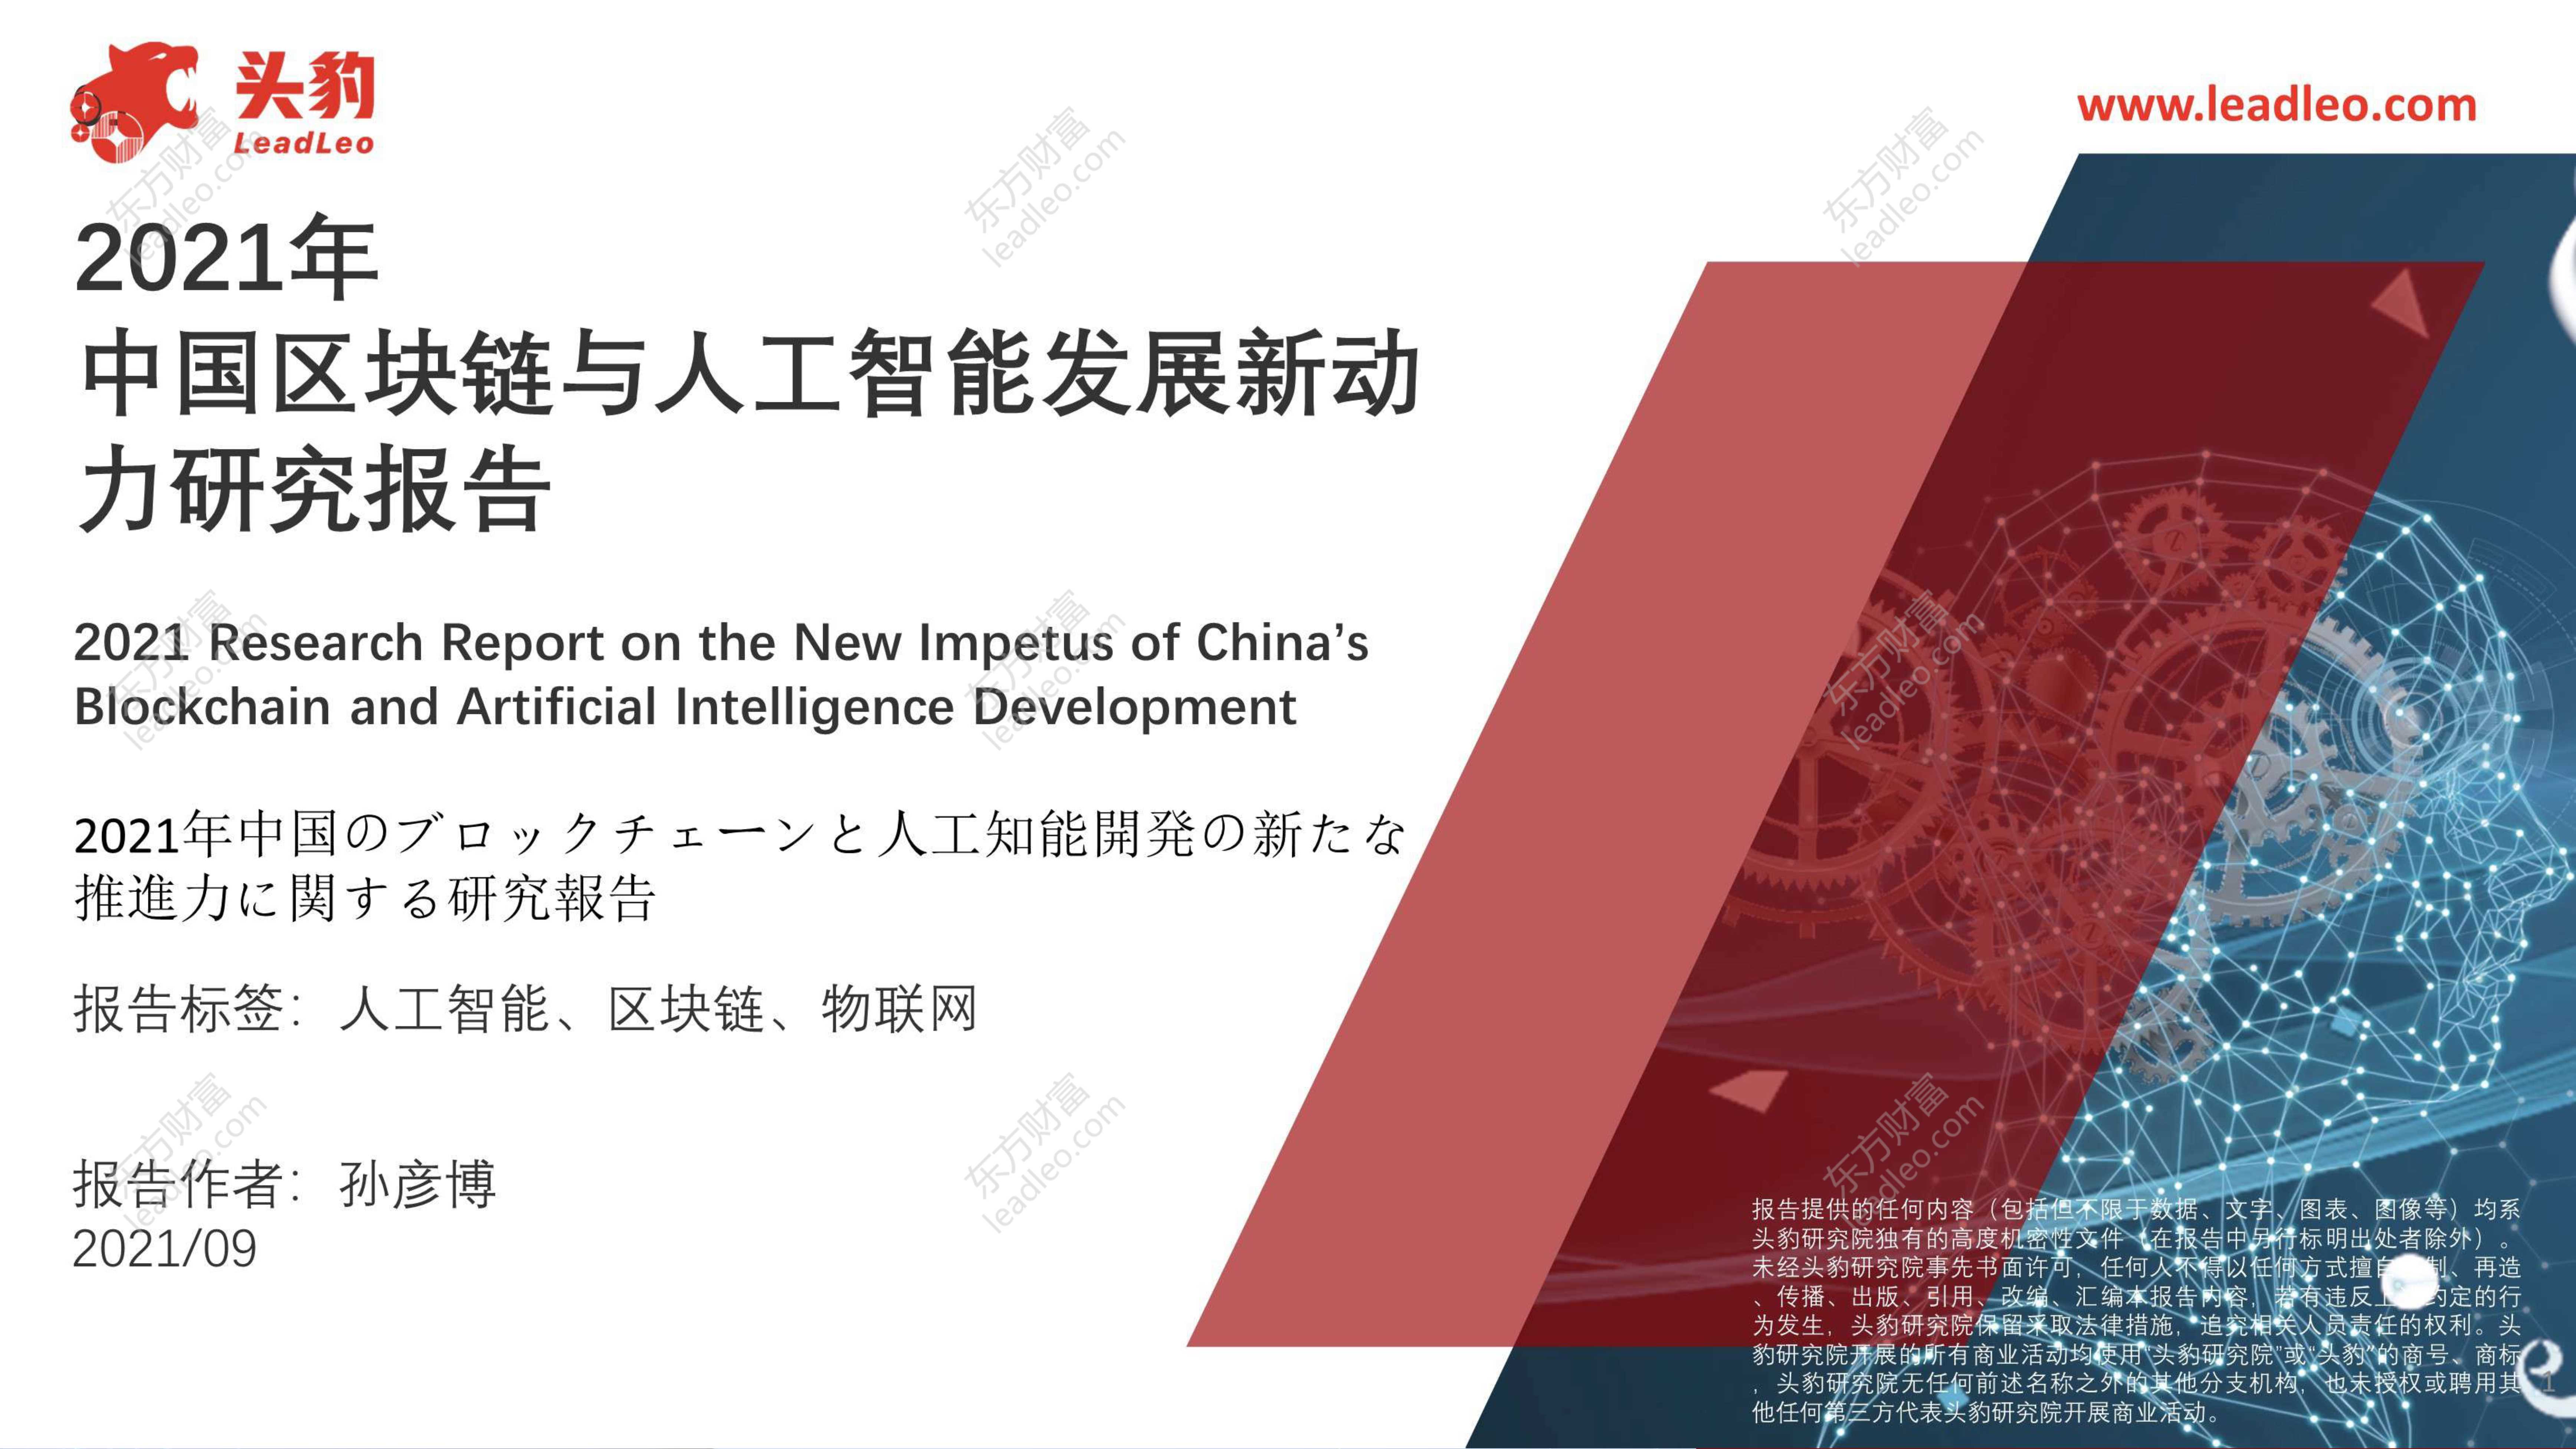 头豹研究院-2021年中国区块链与人工智能发展新动力研究报告-2021.10-42页